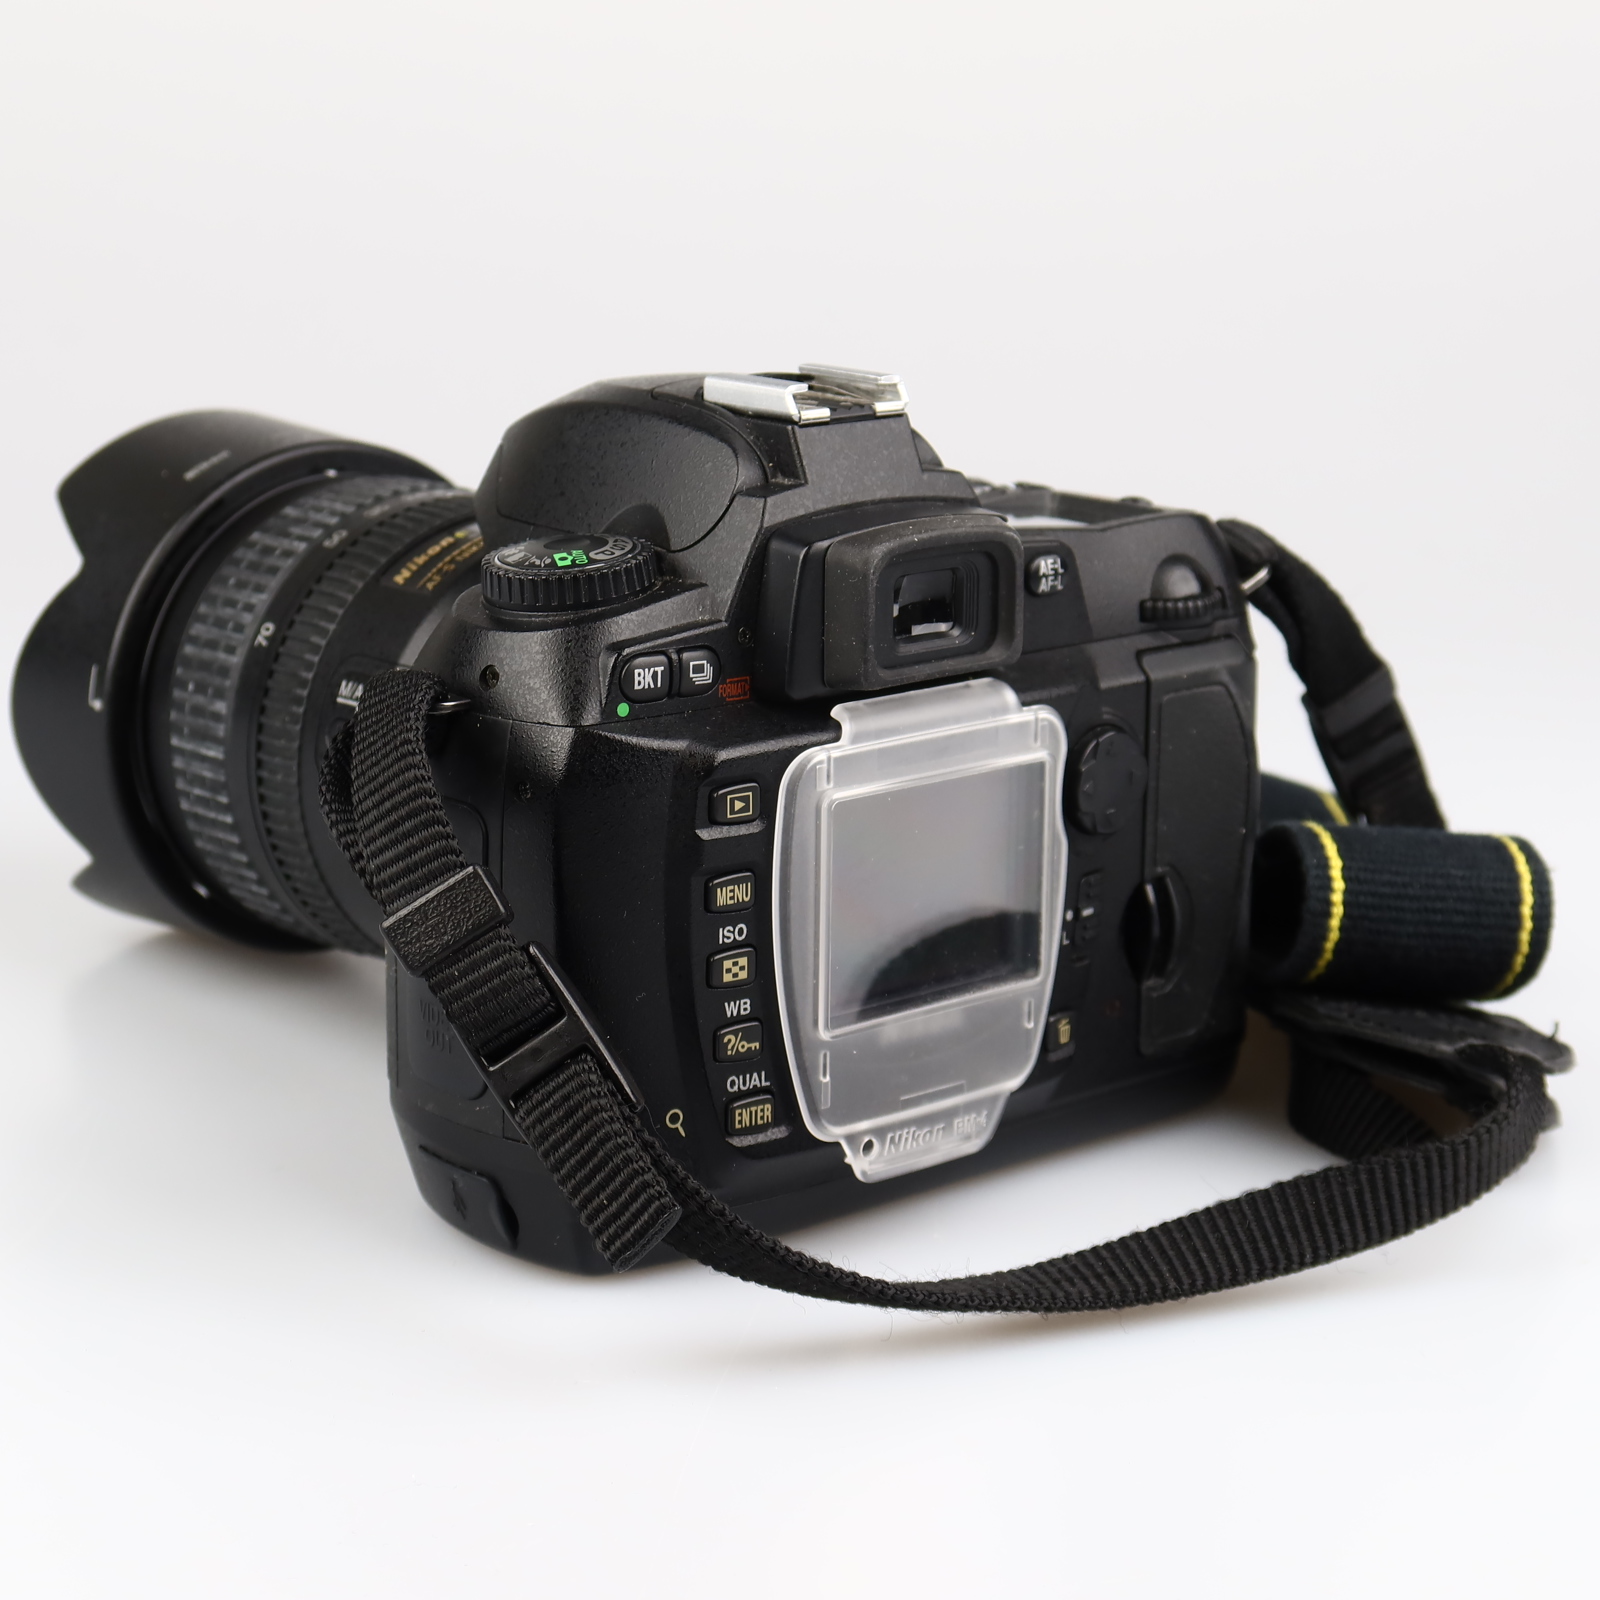 (Myyty) Nikon D70 (SC:16805) + Nikkor AF-S 18-70mm f3.5.-4.5G ED-IF DX (käytetty) 